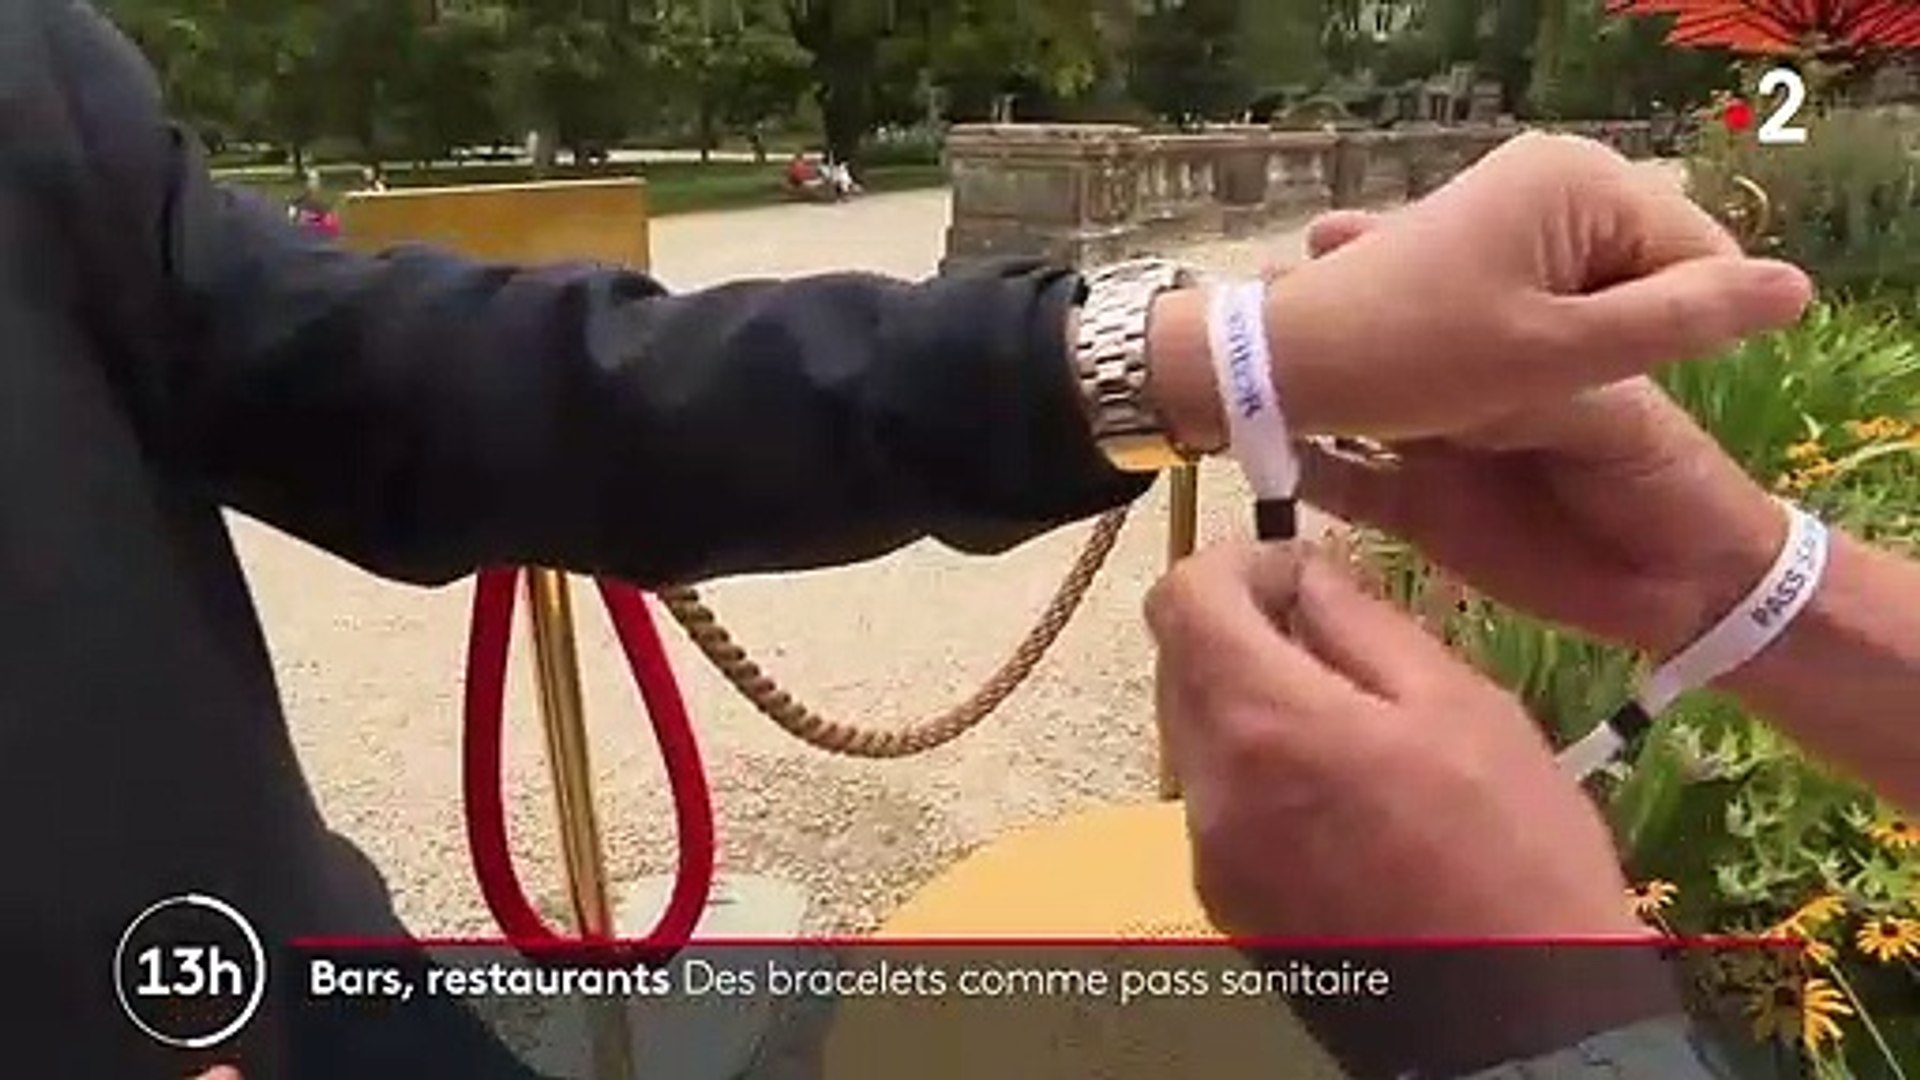 Pass sanitaire : un bracelet pour éviter de scanner les clients tous les  jours - Vidéo Dailymotion